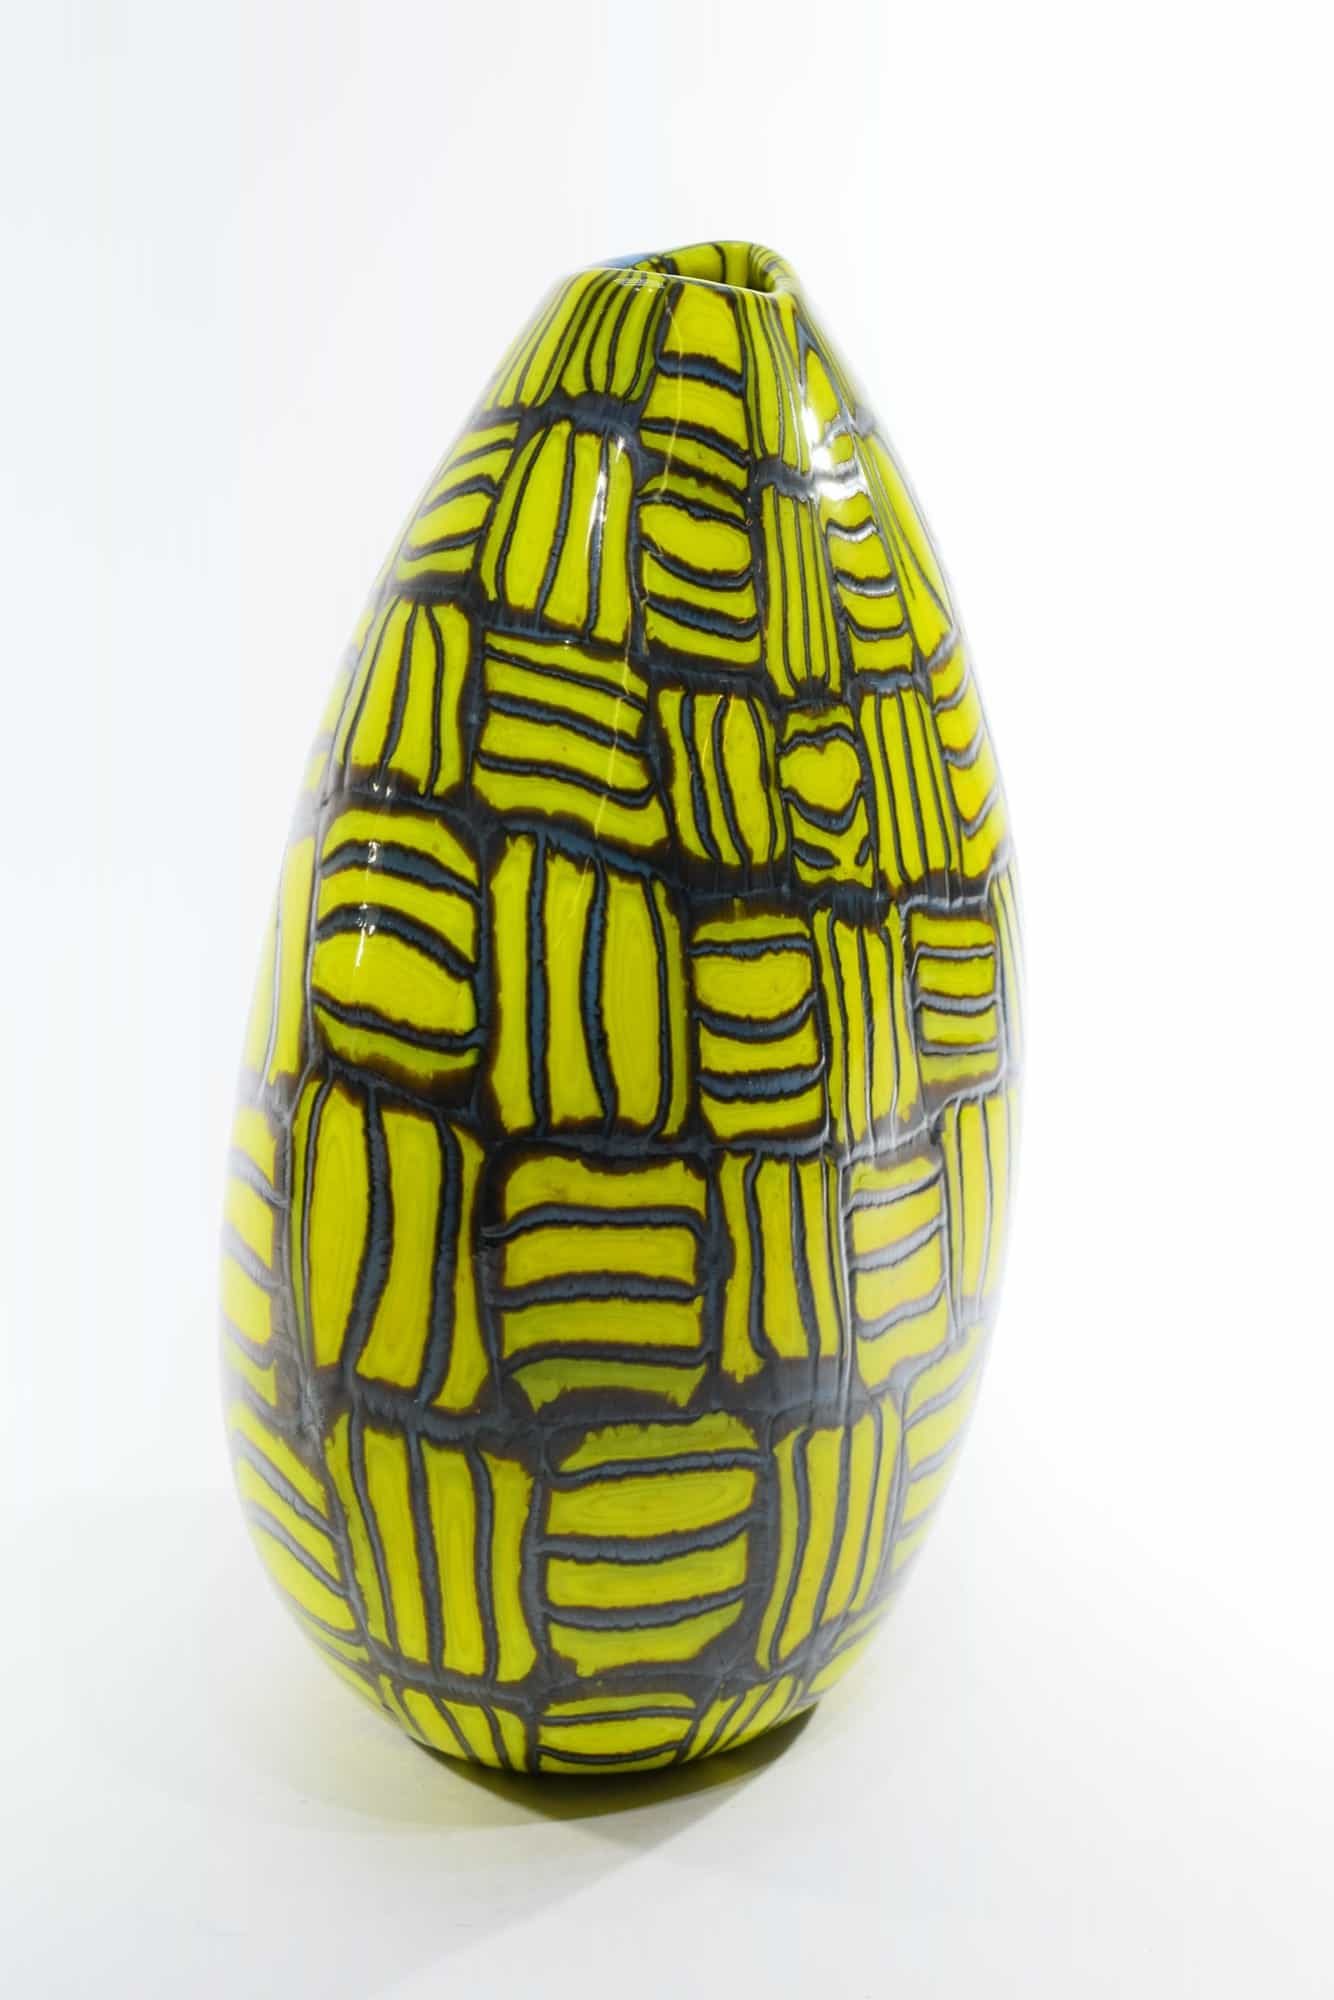 unique-vase-murano-glass-15026